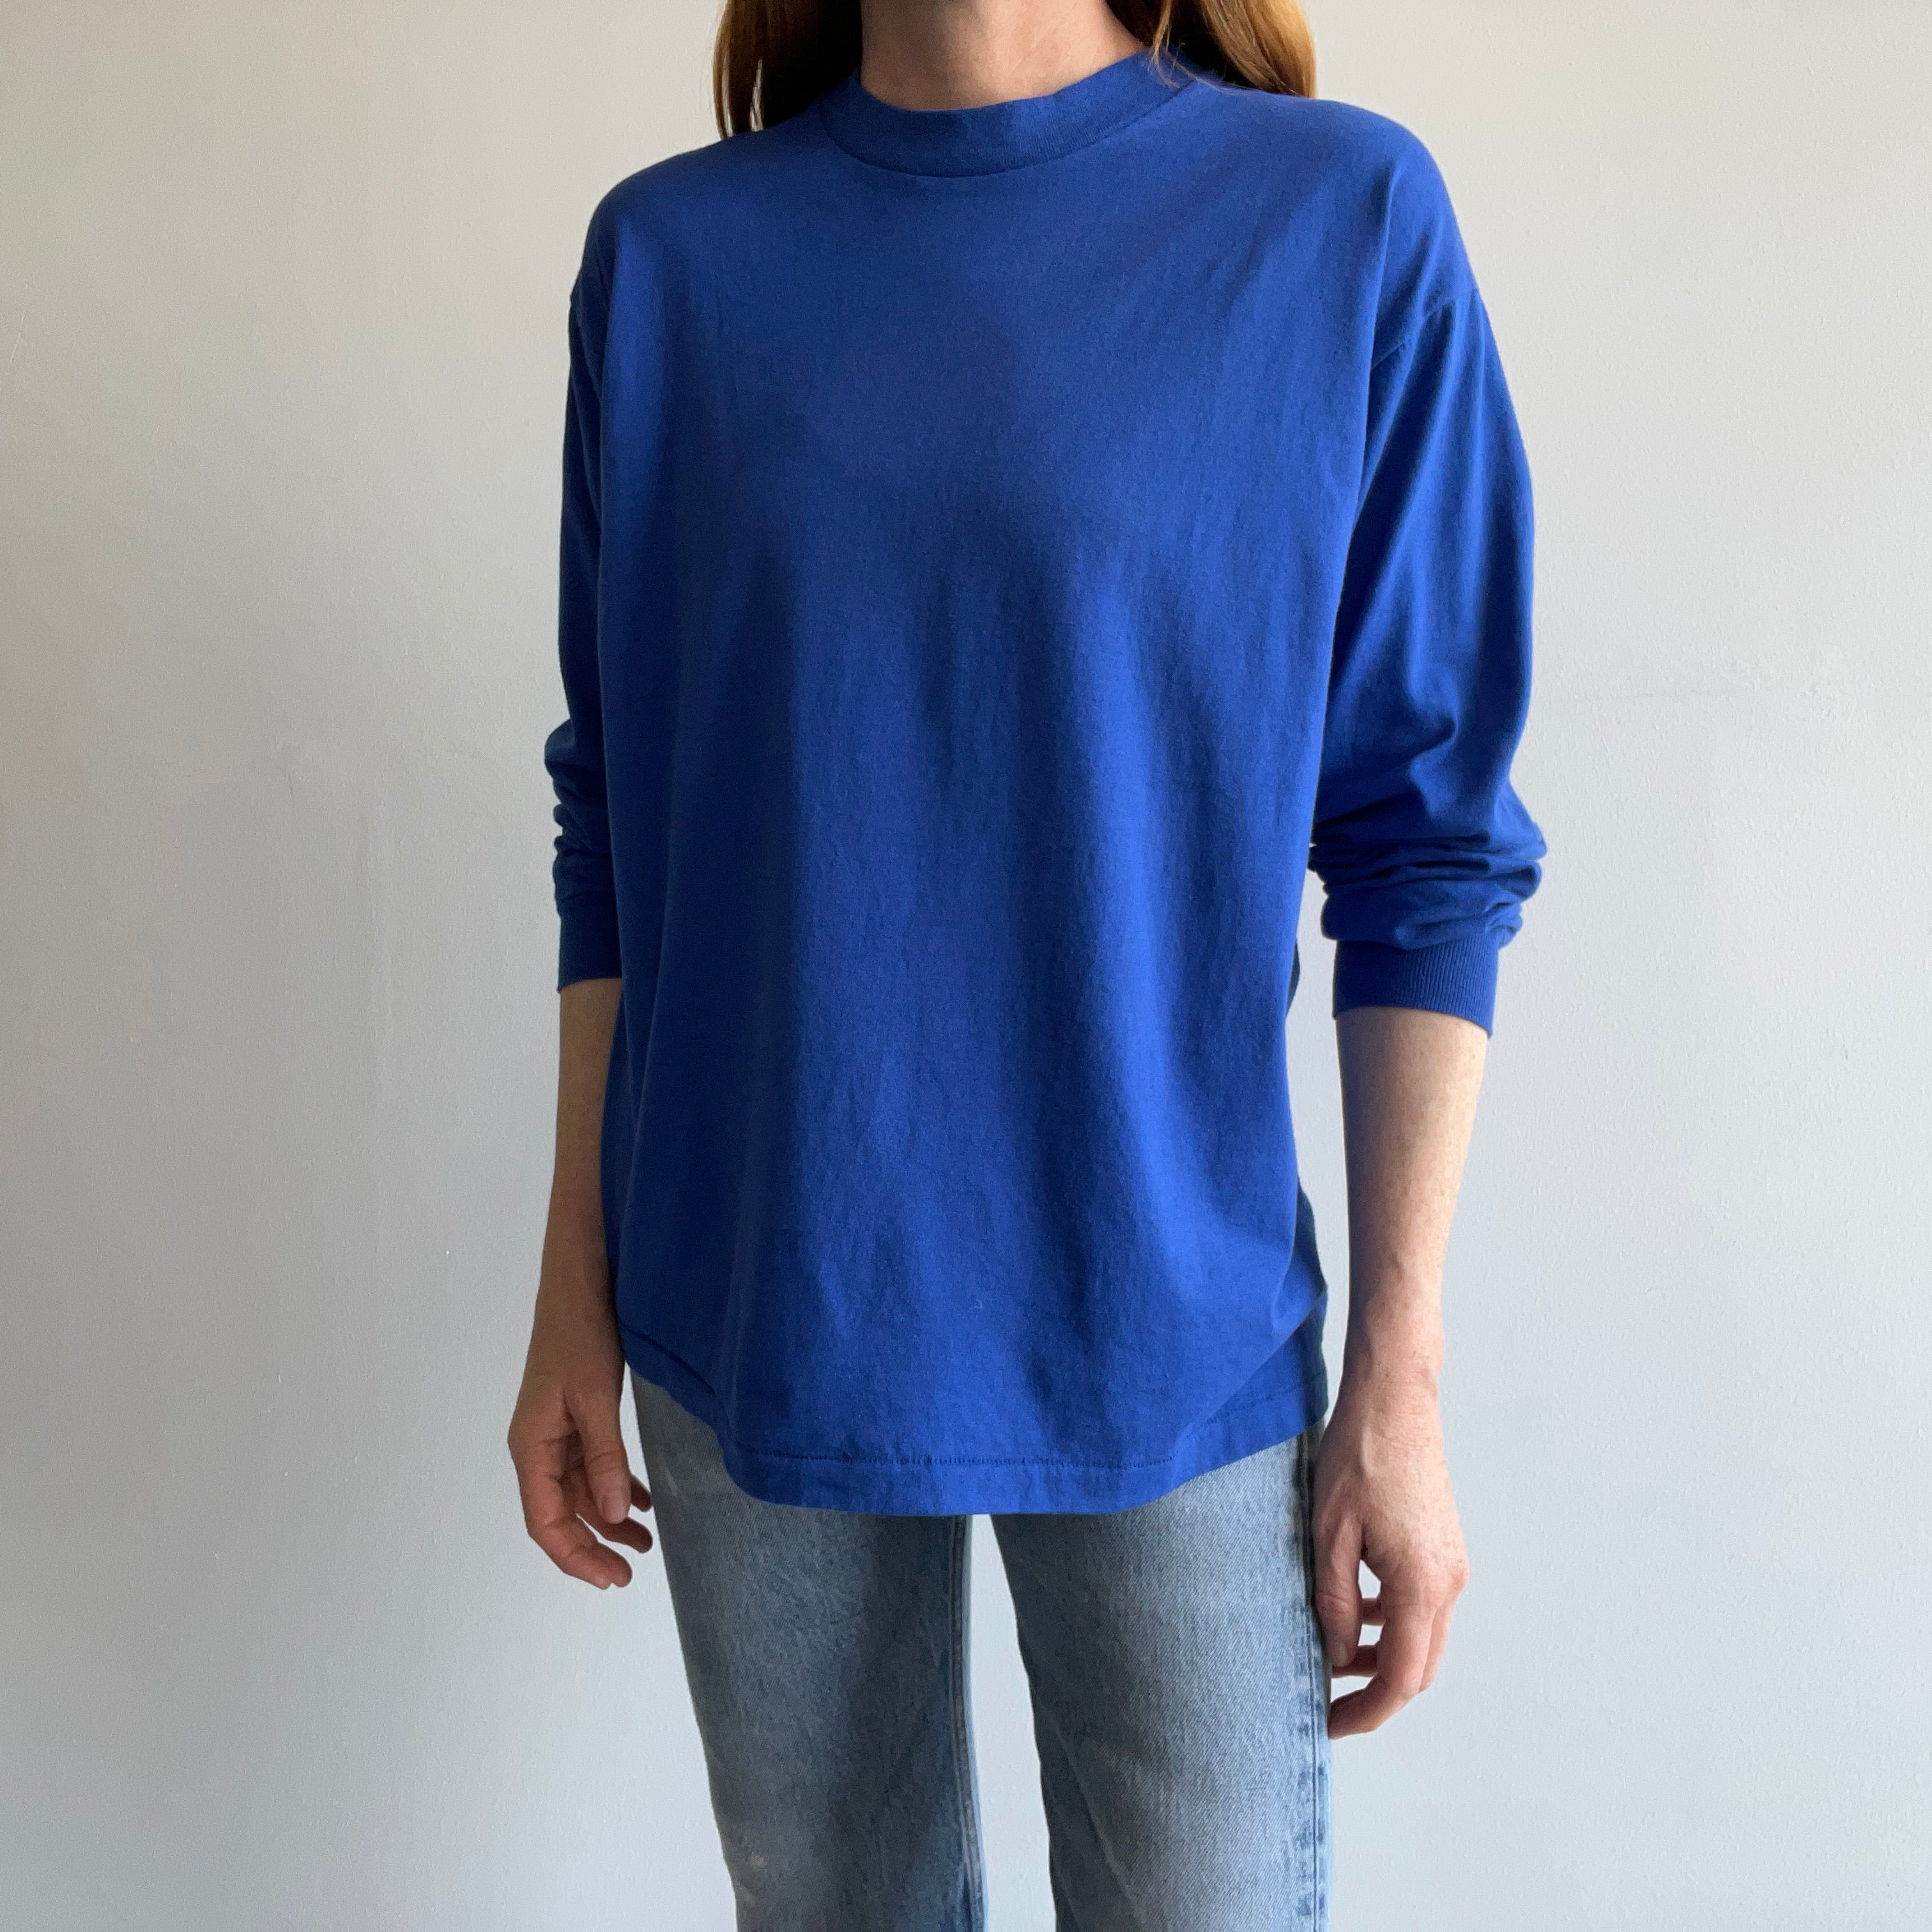 1980s Blank Dodger Blue Long Sleeve Lightweight Cotton T-Shirt by Russell